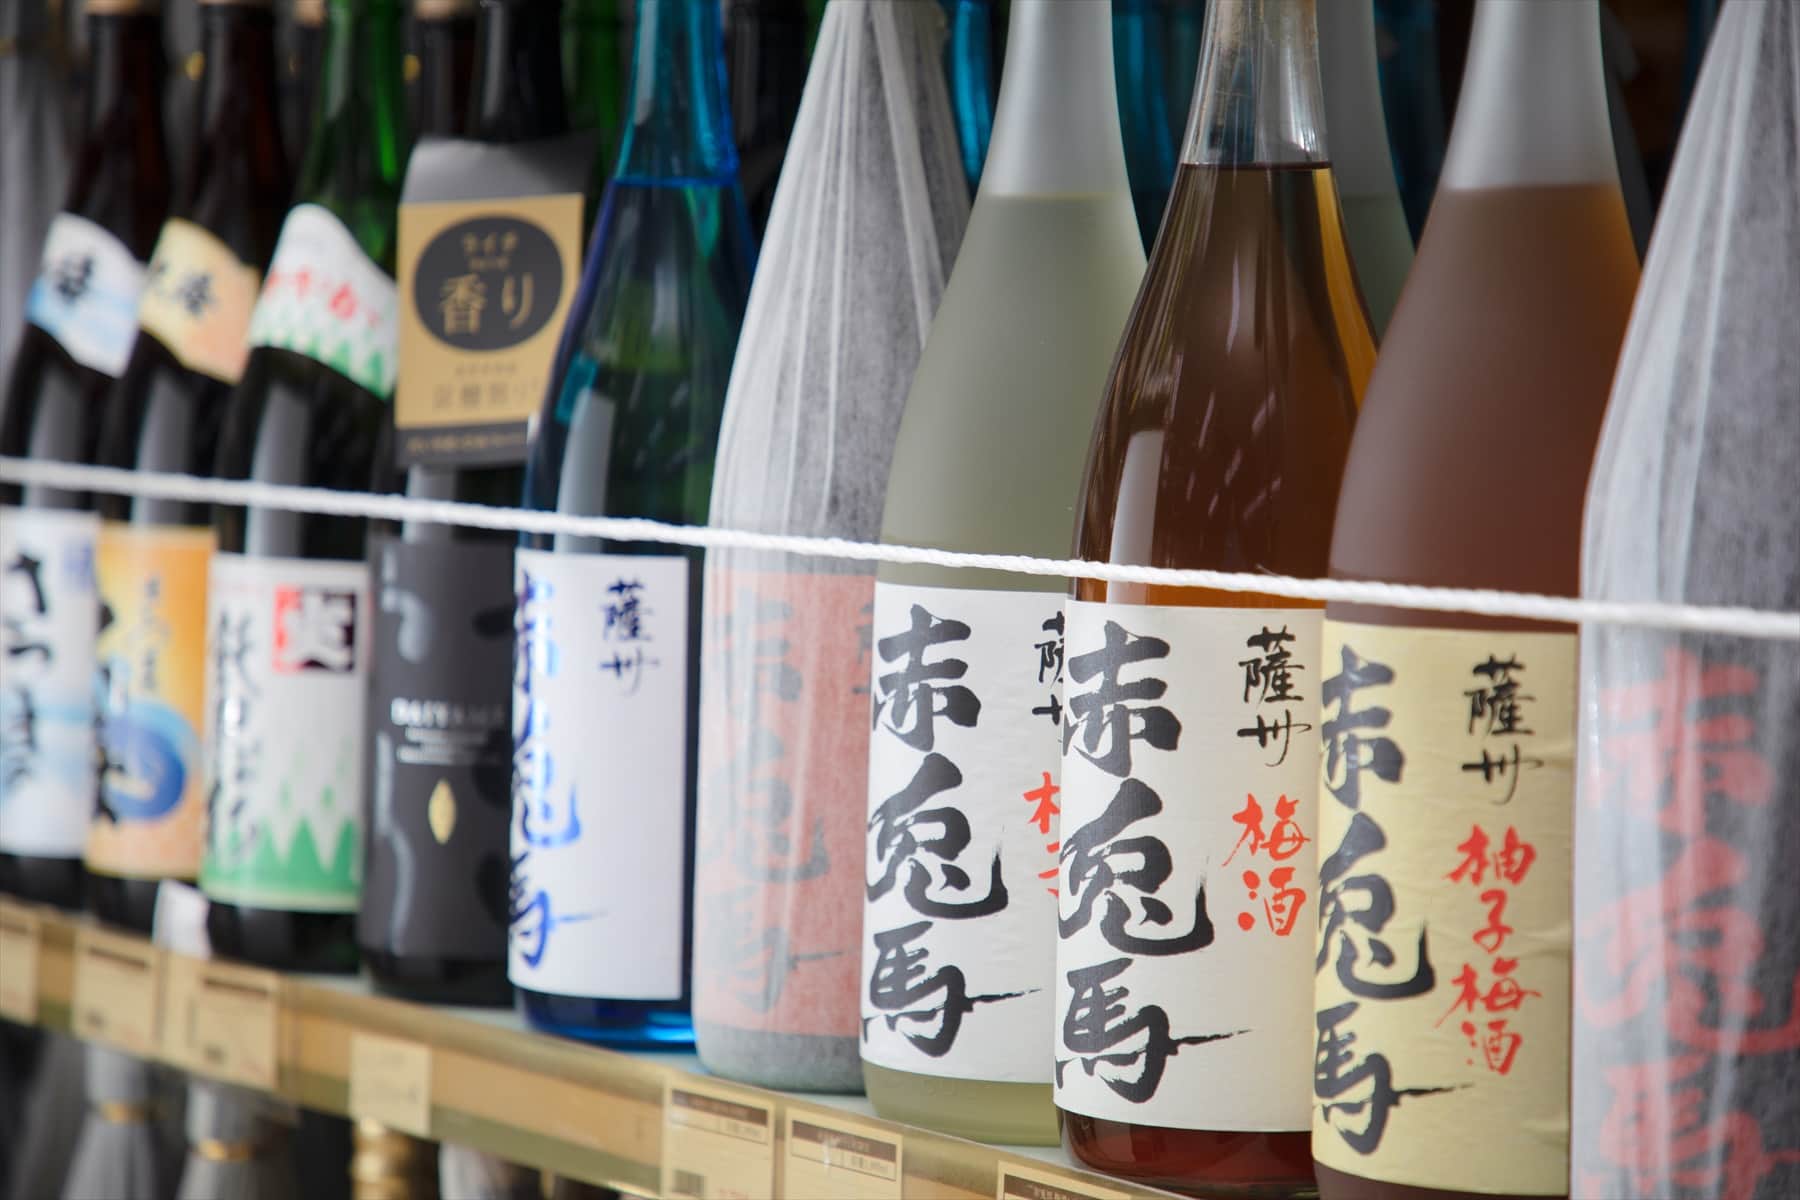 厳選した日本酒